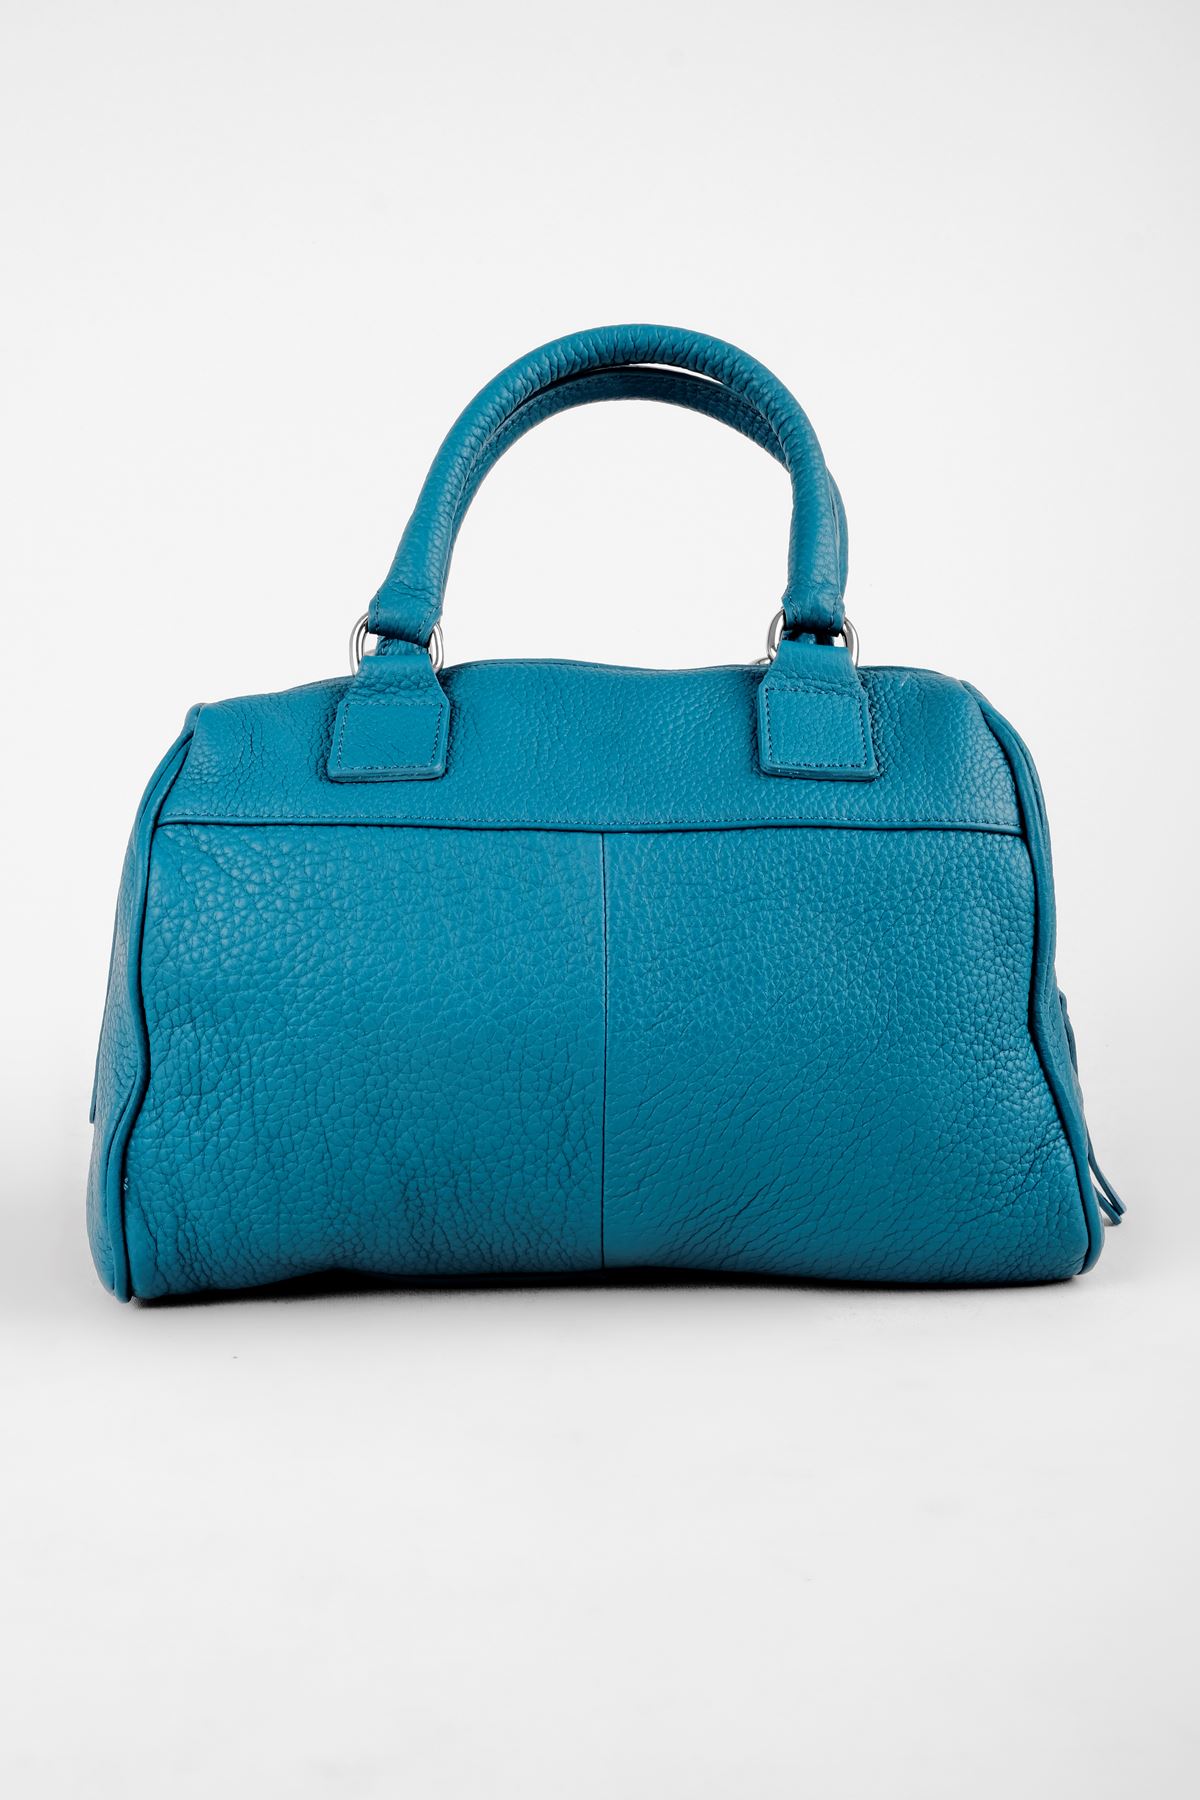 Kadın Hakiki Deri El Çanatsı Bavul Model-Petrol Mavi